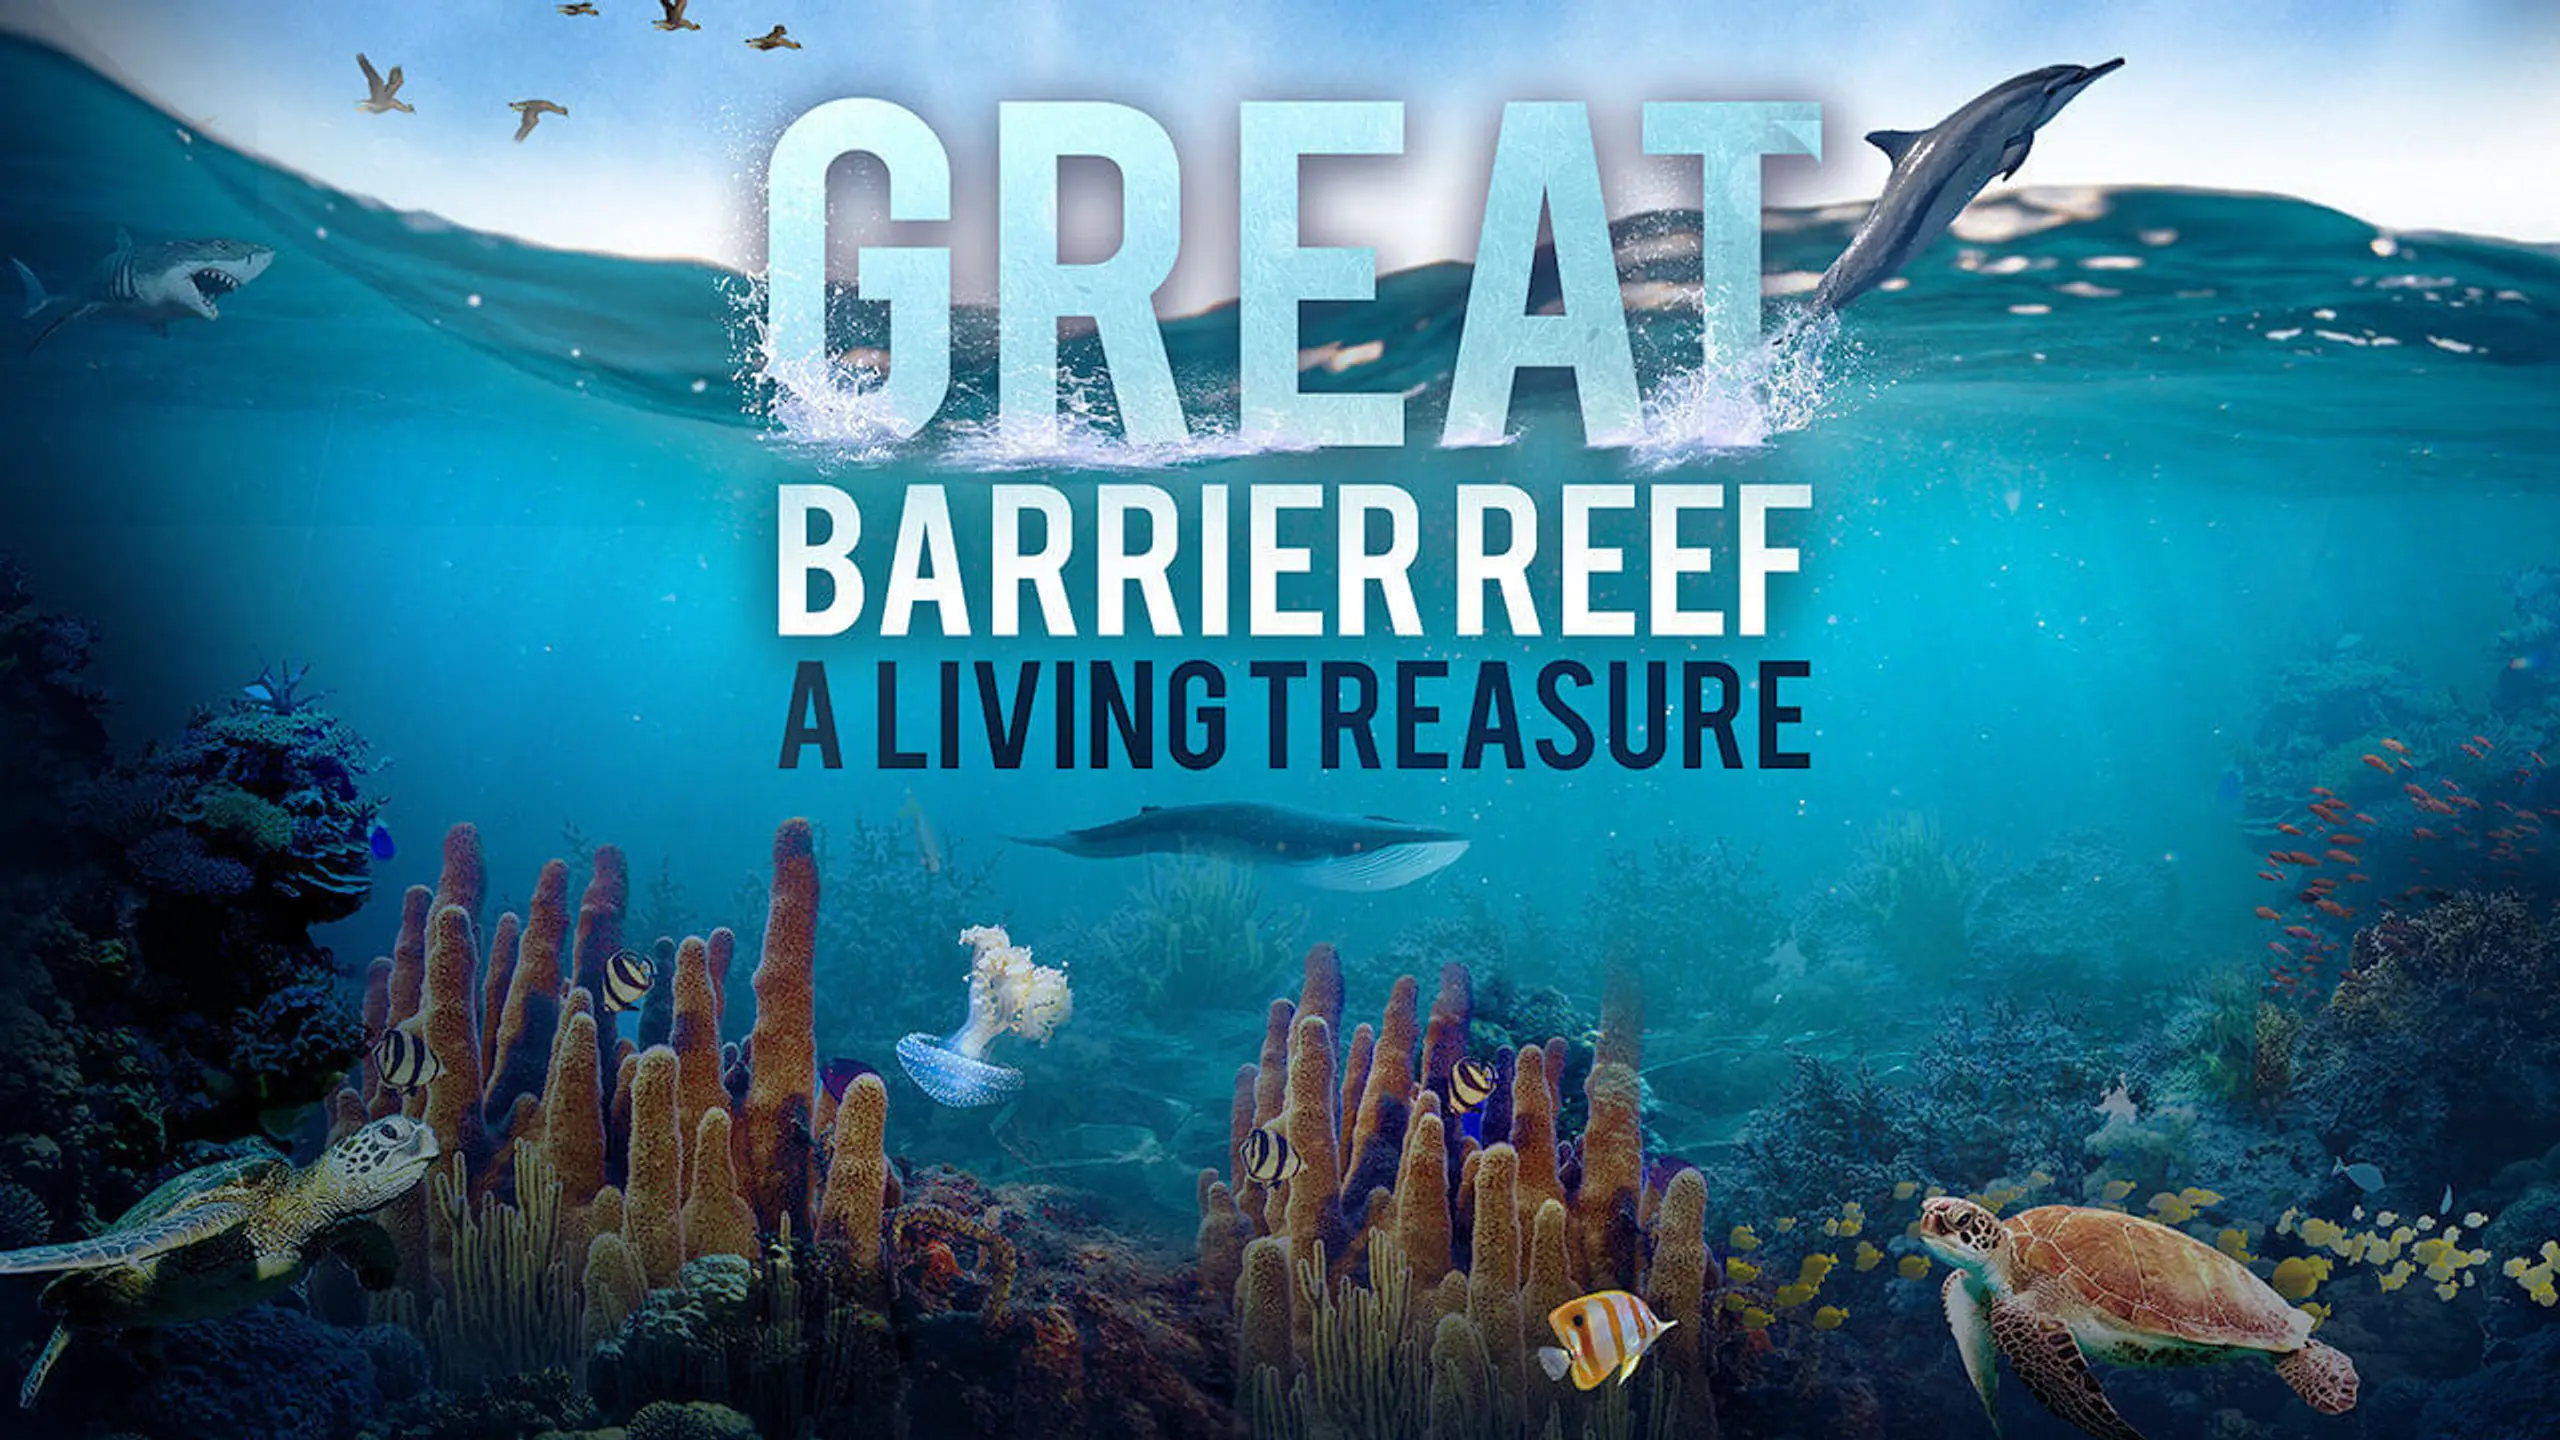 Das Great Barrier Reef - Schatzkiste der Natur